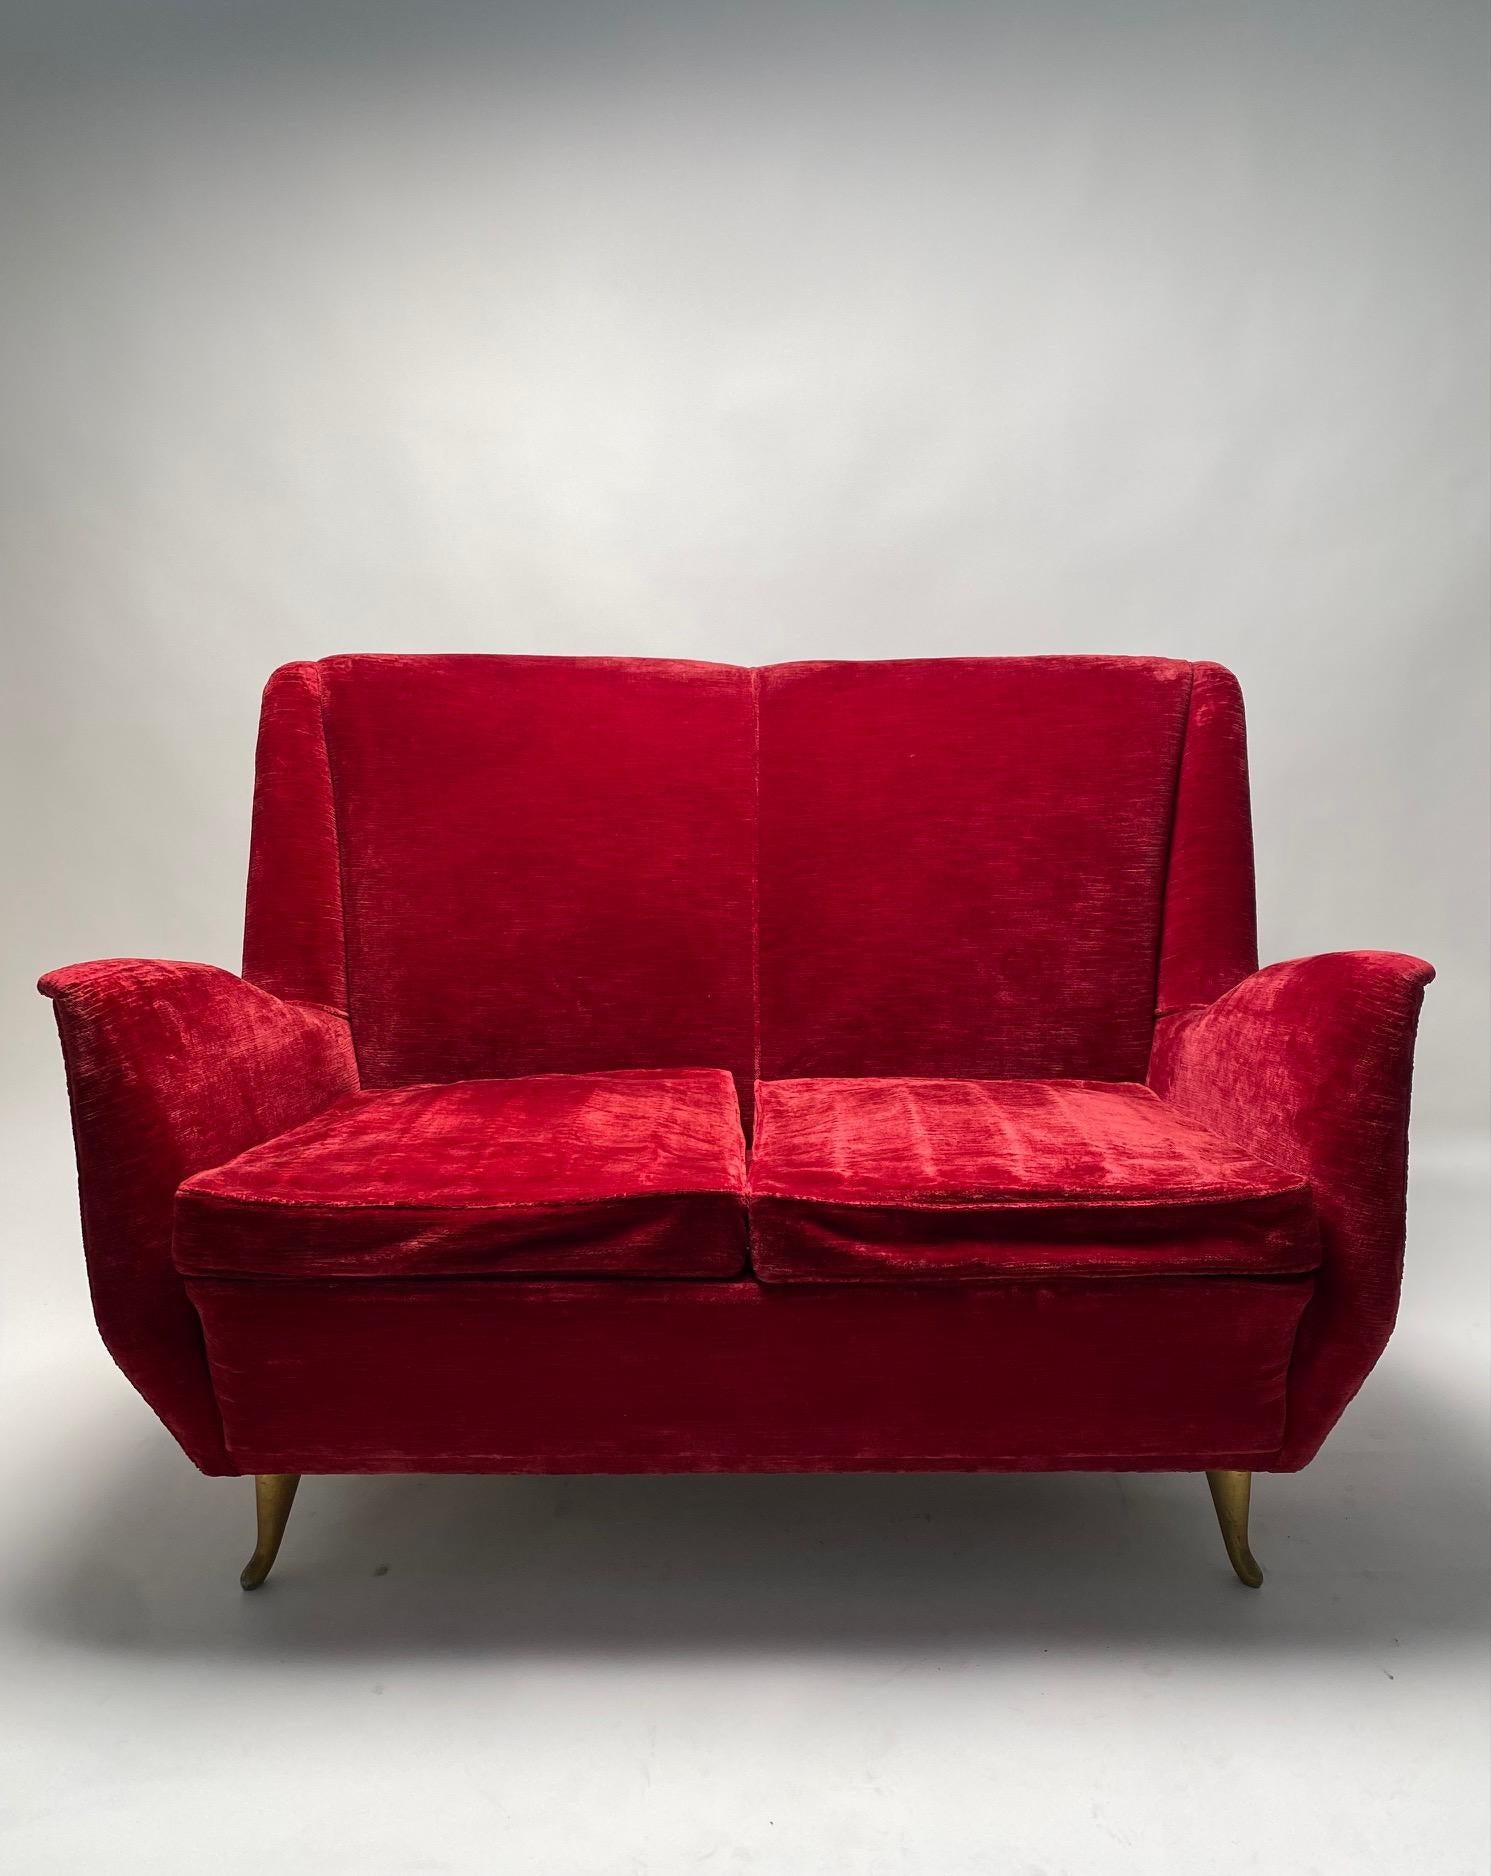 Italienisches zweisitziges rotes Sofa mit zwei Etagen, hergestellt von I.S.A. Bergamo, Att. Gio Ponti.

Seltenes und elegantes italienisches Sofa aus den 1950er Jahren, hergestellt von I.S.A. in Bergamo, einem Unternehmen, für das Gio Ponti lange